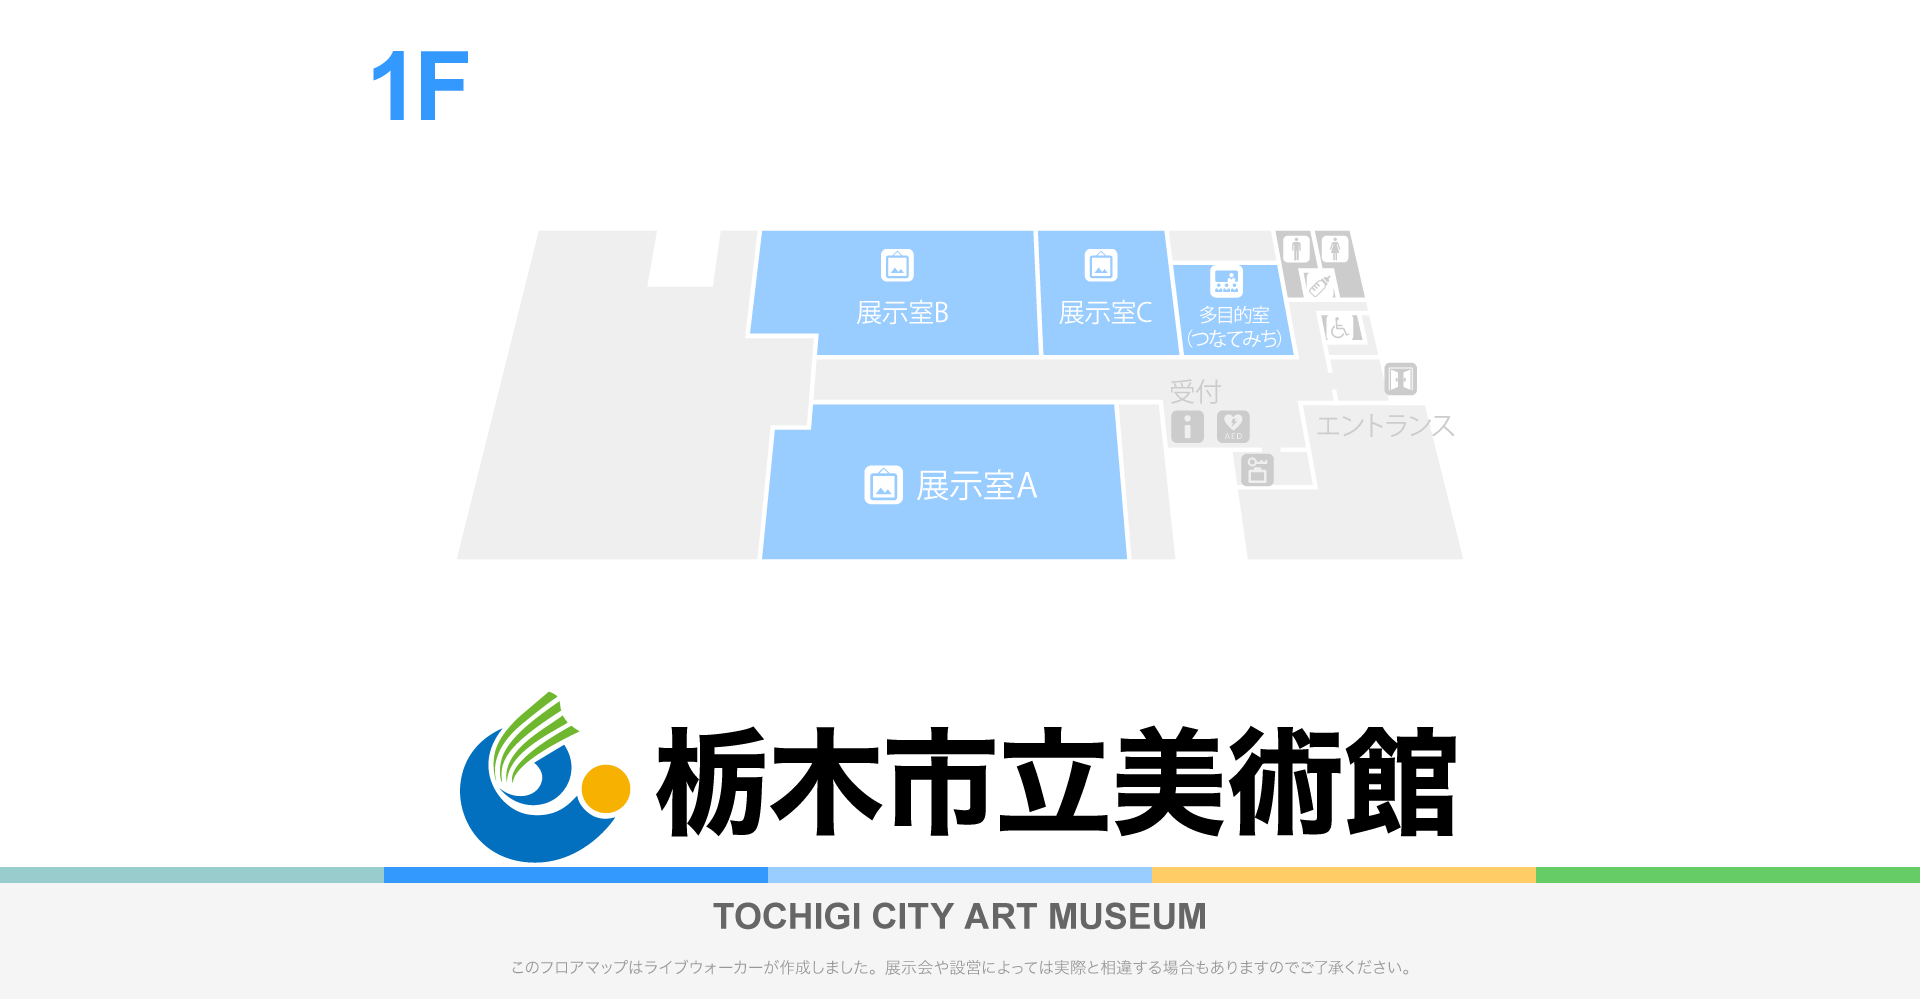 栃木市立美術館のフロアマップ・ミュージアム